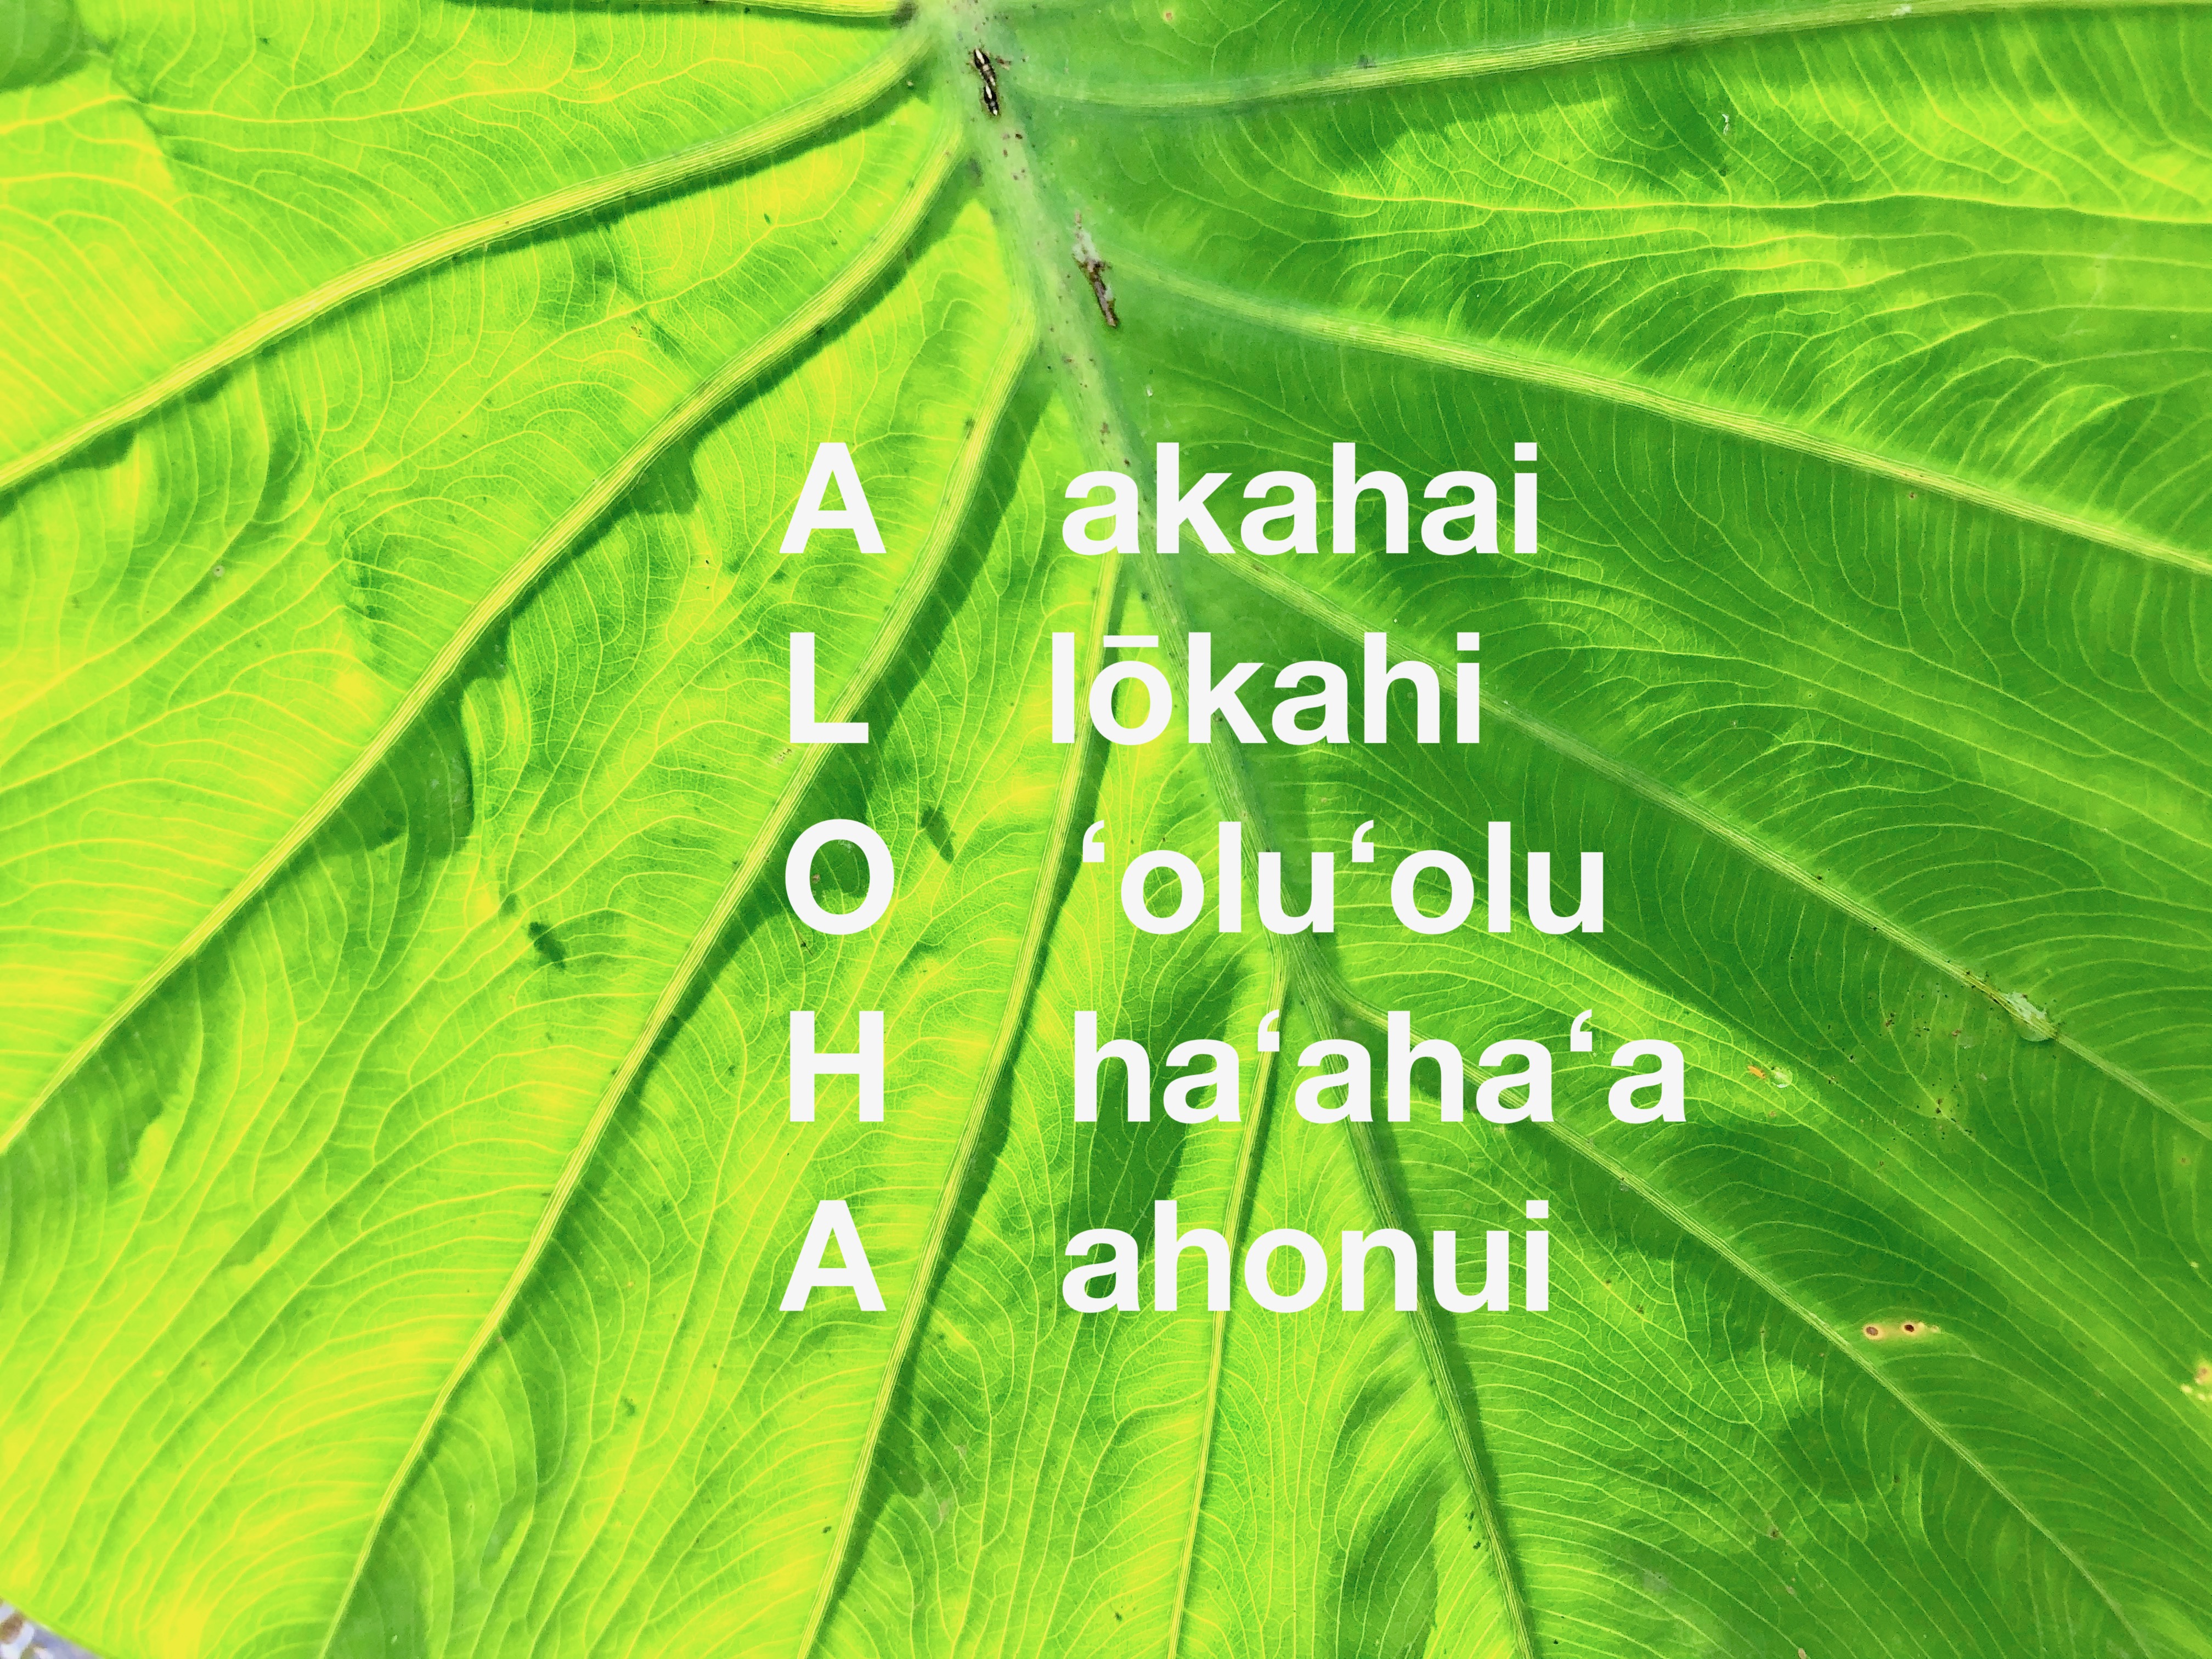 アロハが持つたくさんの意味 ハワイ州観光局公式ラーニングサイト